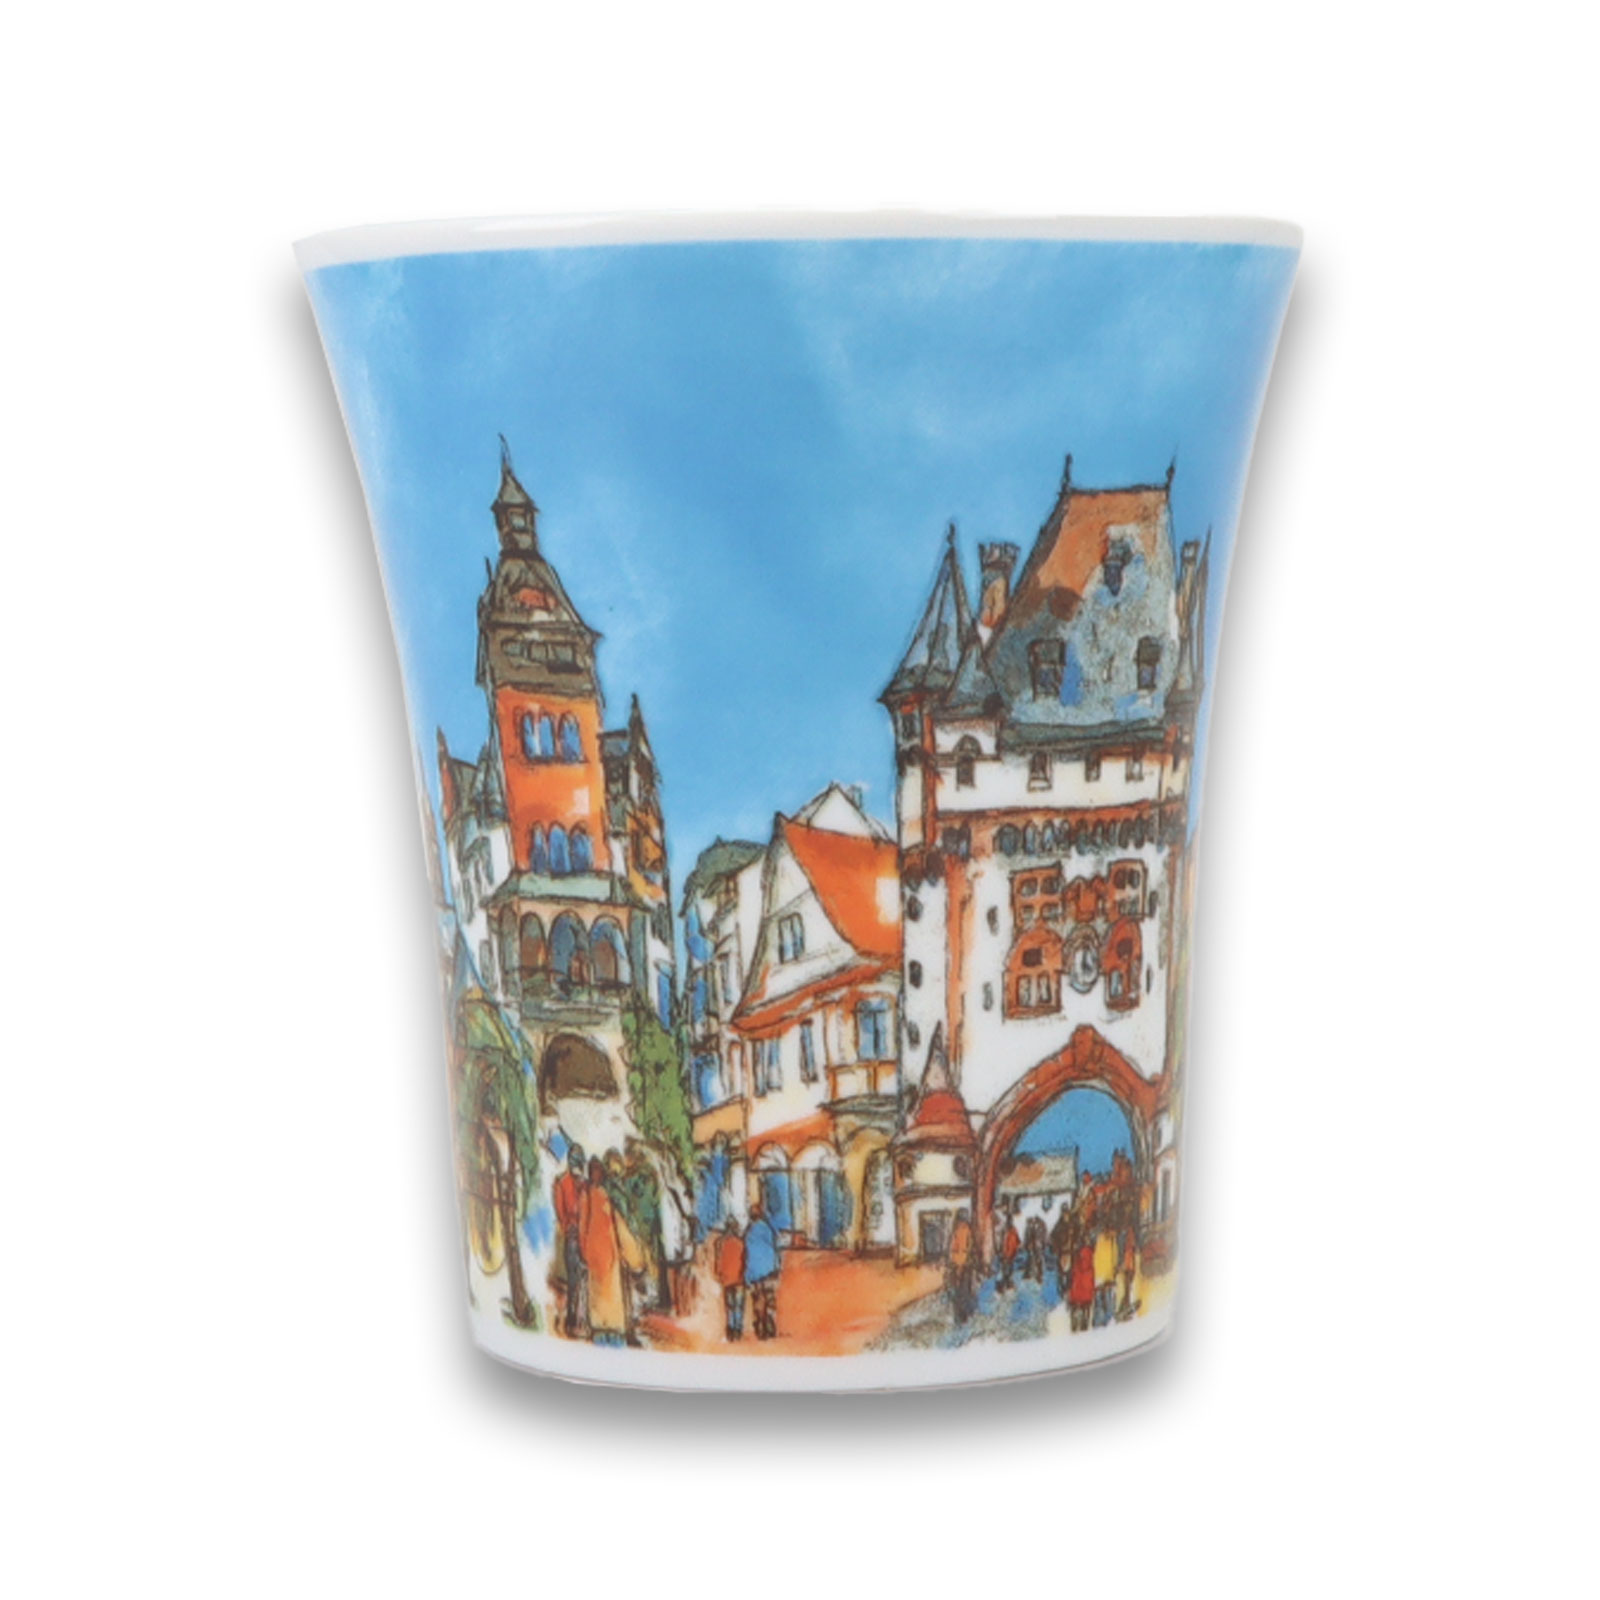 Porzellan Tasse mit den Wahrzeichen der Nibelungenstadt Worms am Rhein.